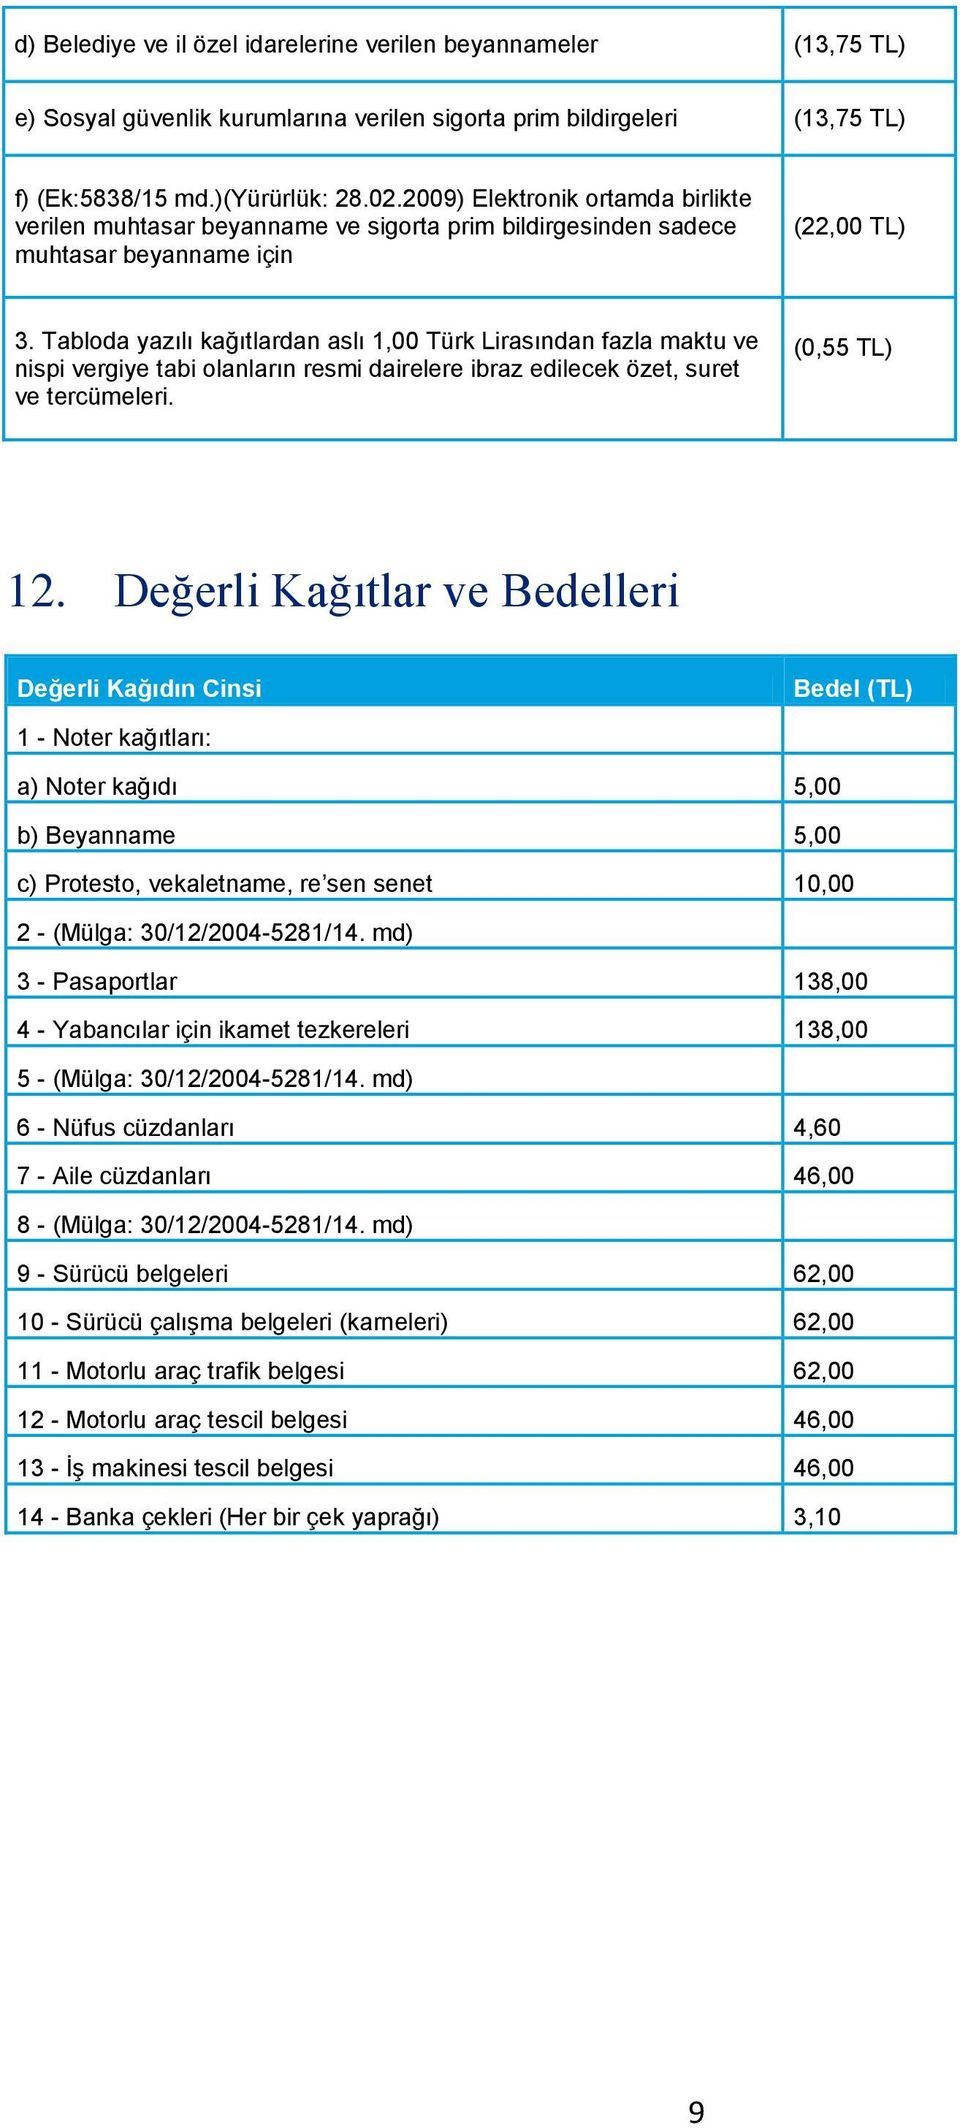 Tabloda yazılı kağıtlardan aslı 1,00 Türk Lirasından fazla maktu ve nispi vergiye tabi olanların resmi dairelere ibraz edilecek özet, suret ve tercümeleri. (0,55 TL) 12.